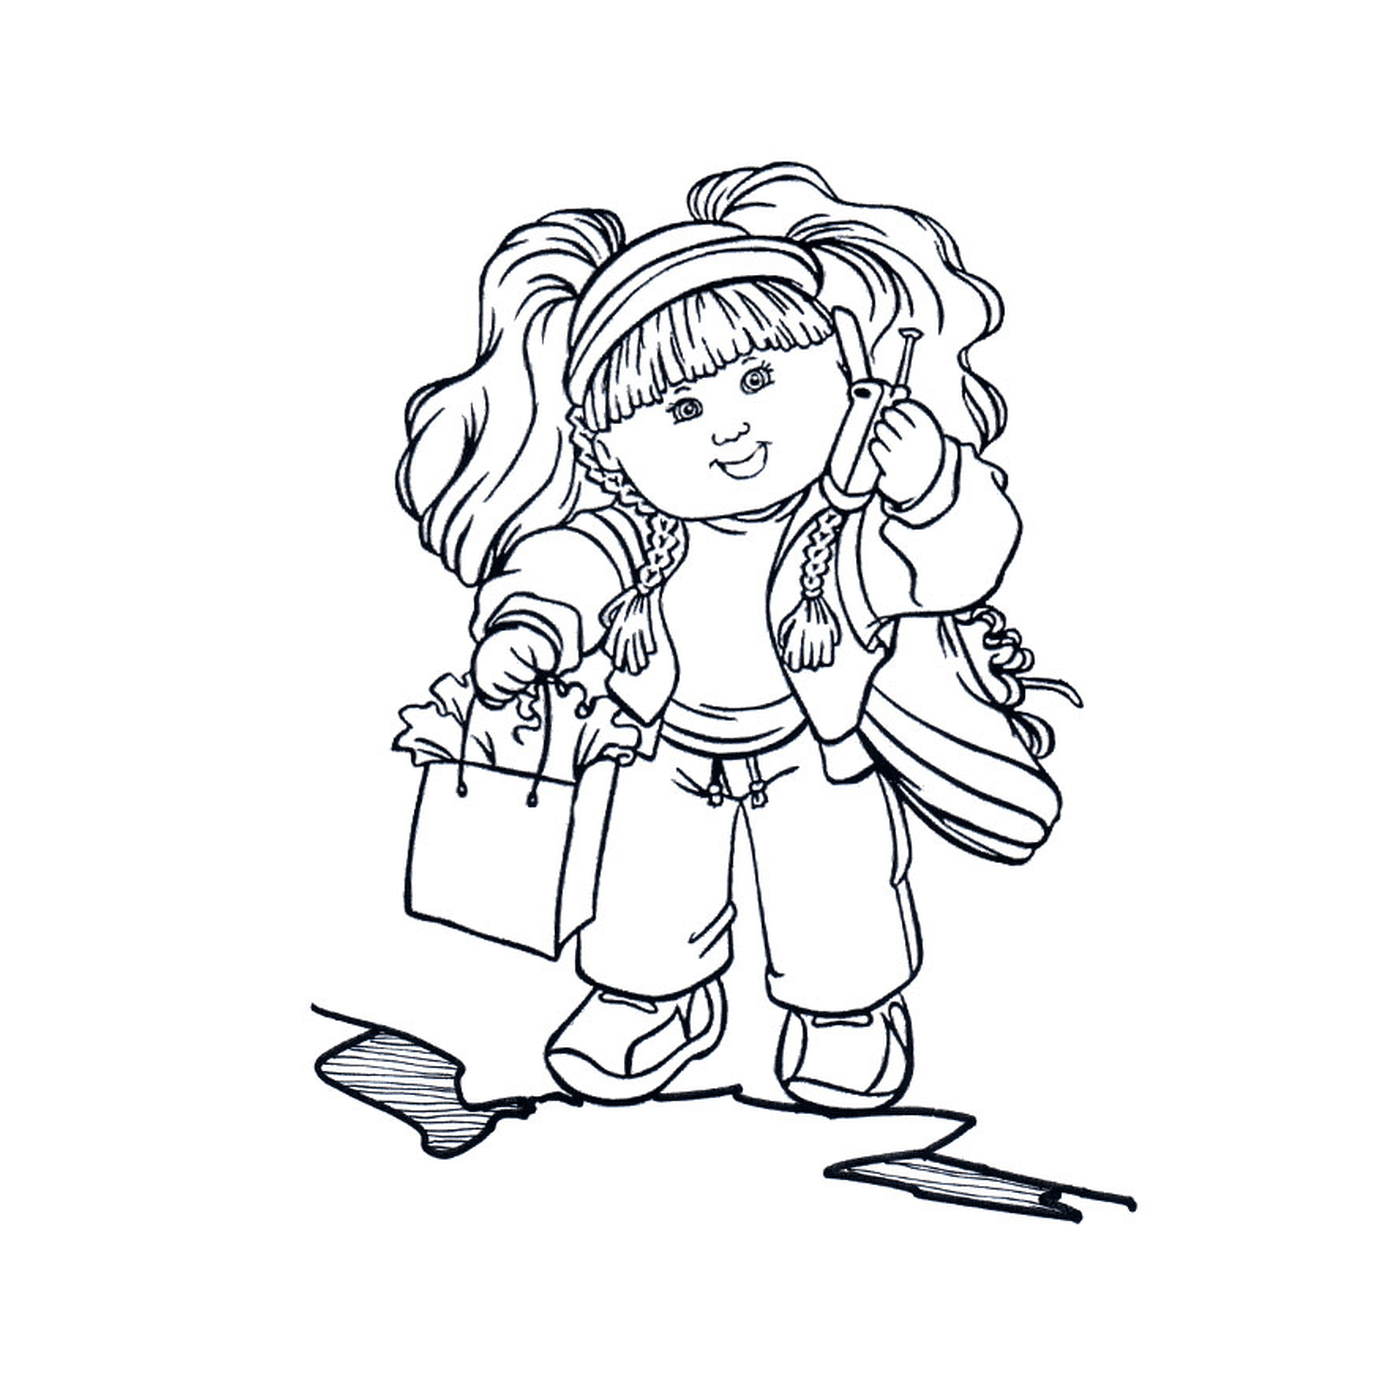  Una niña de 7 años sosteniendo bolsas de compras 